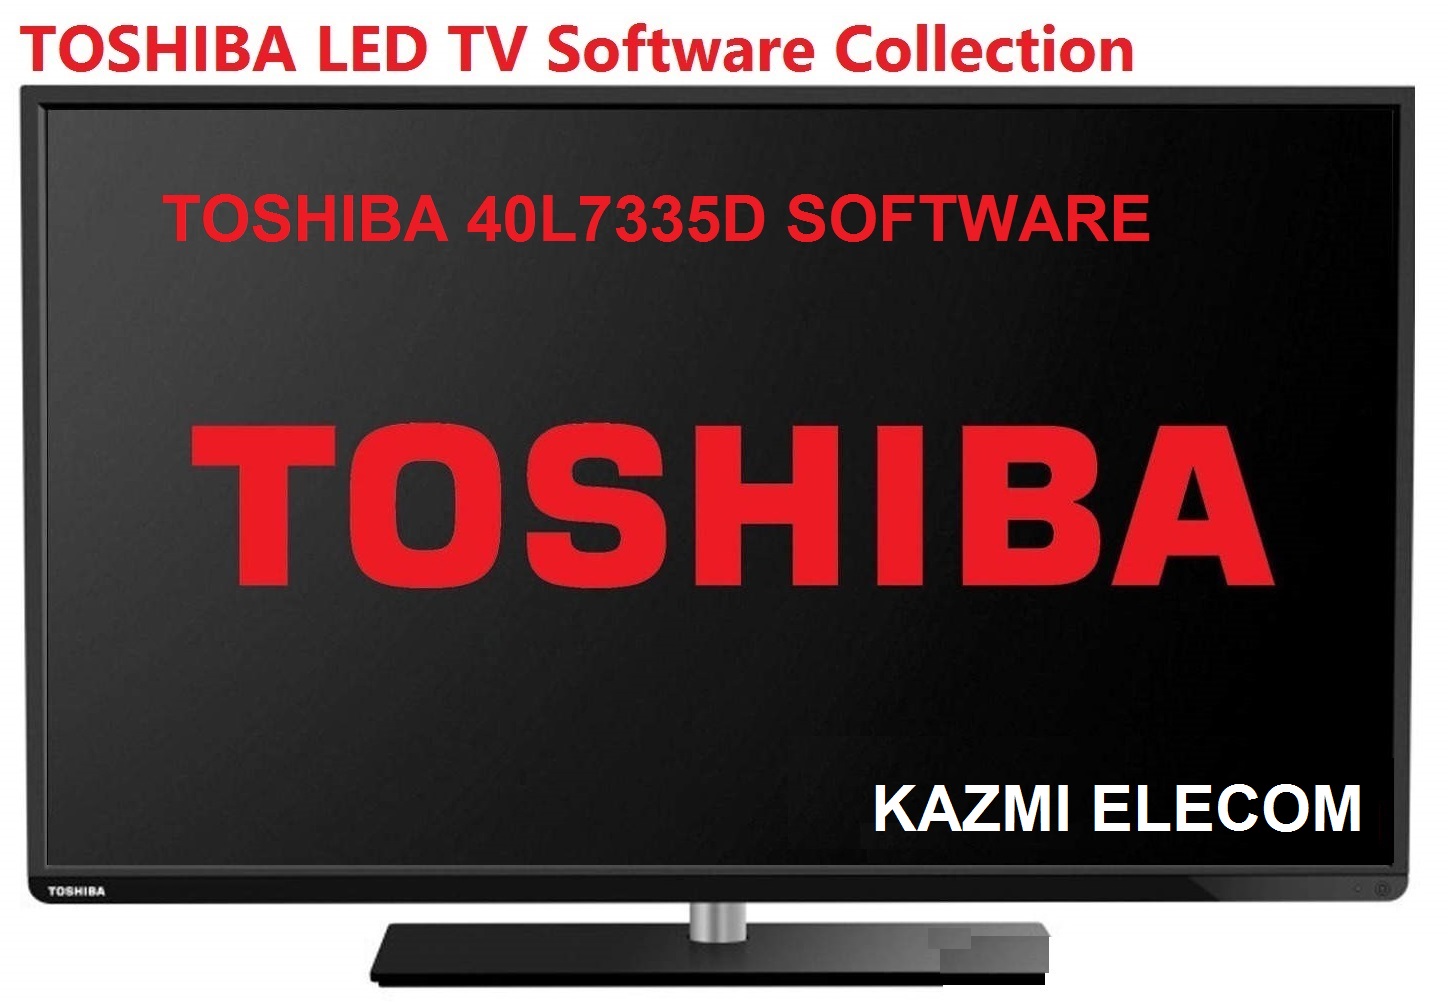 Toshiba 40L7335D